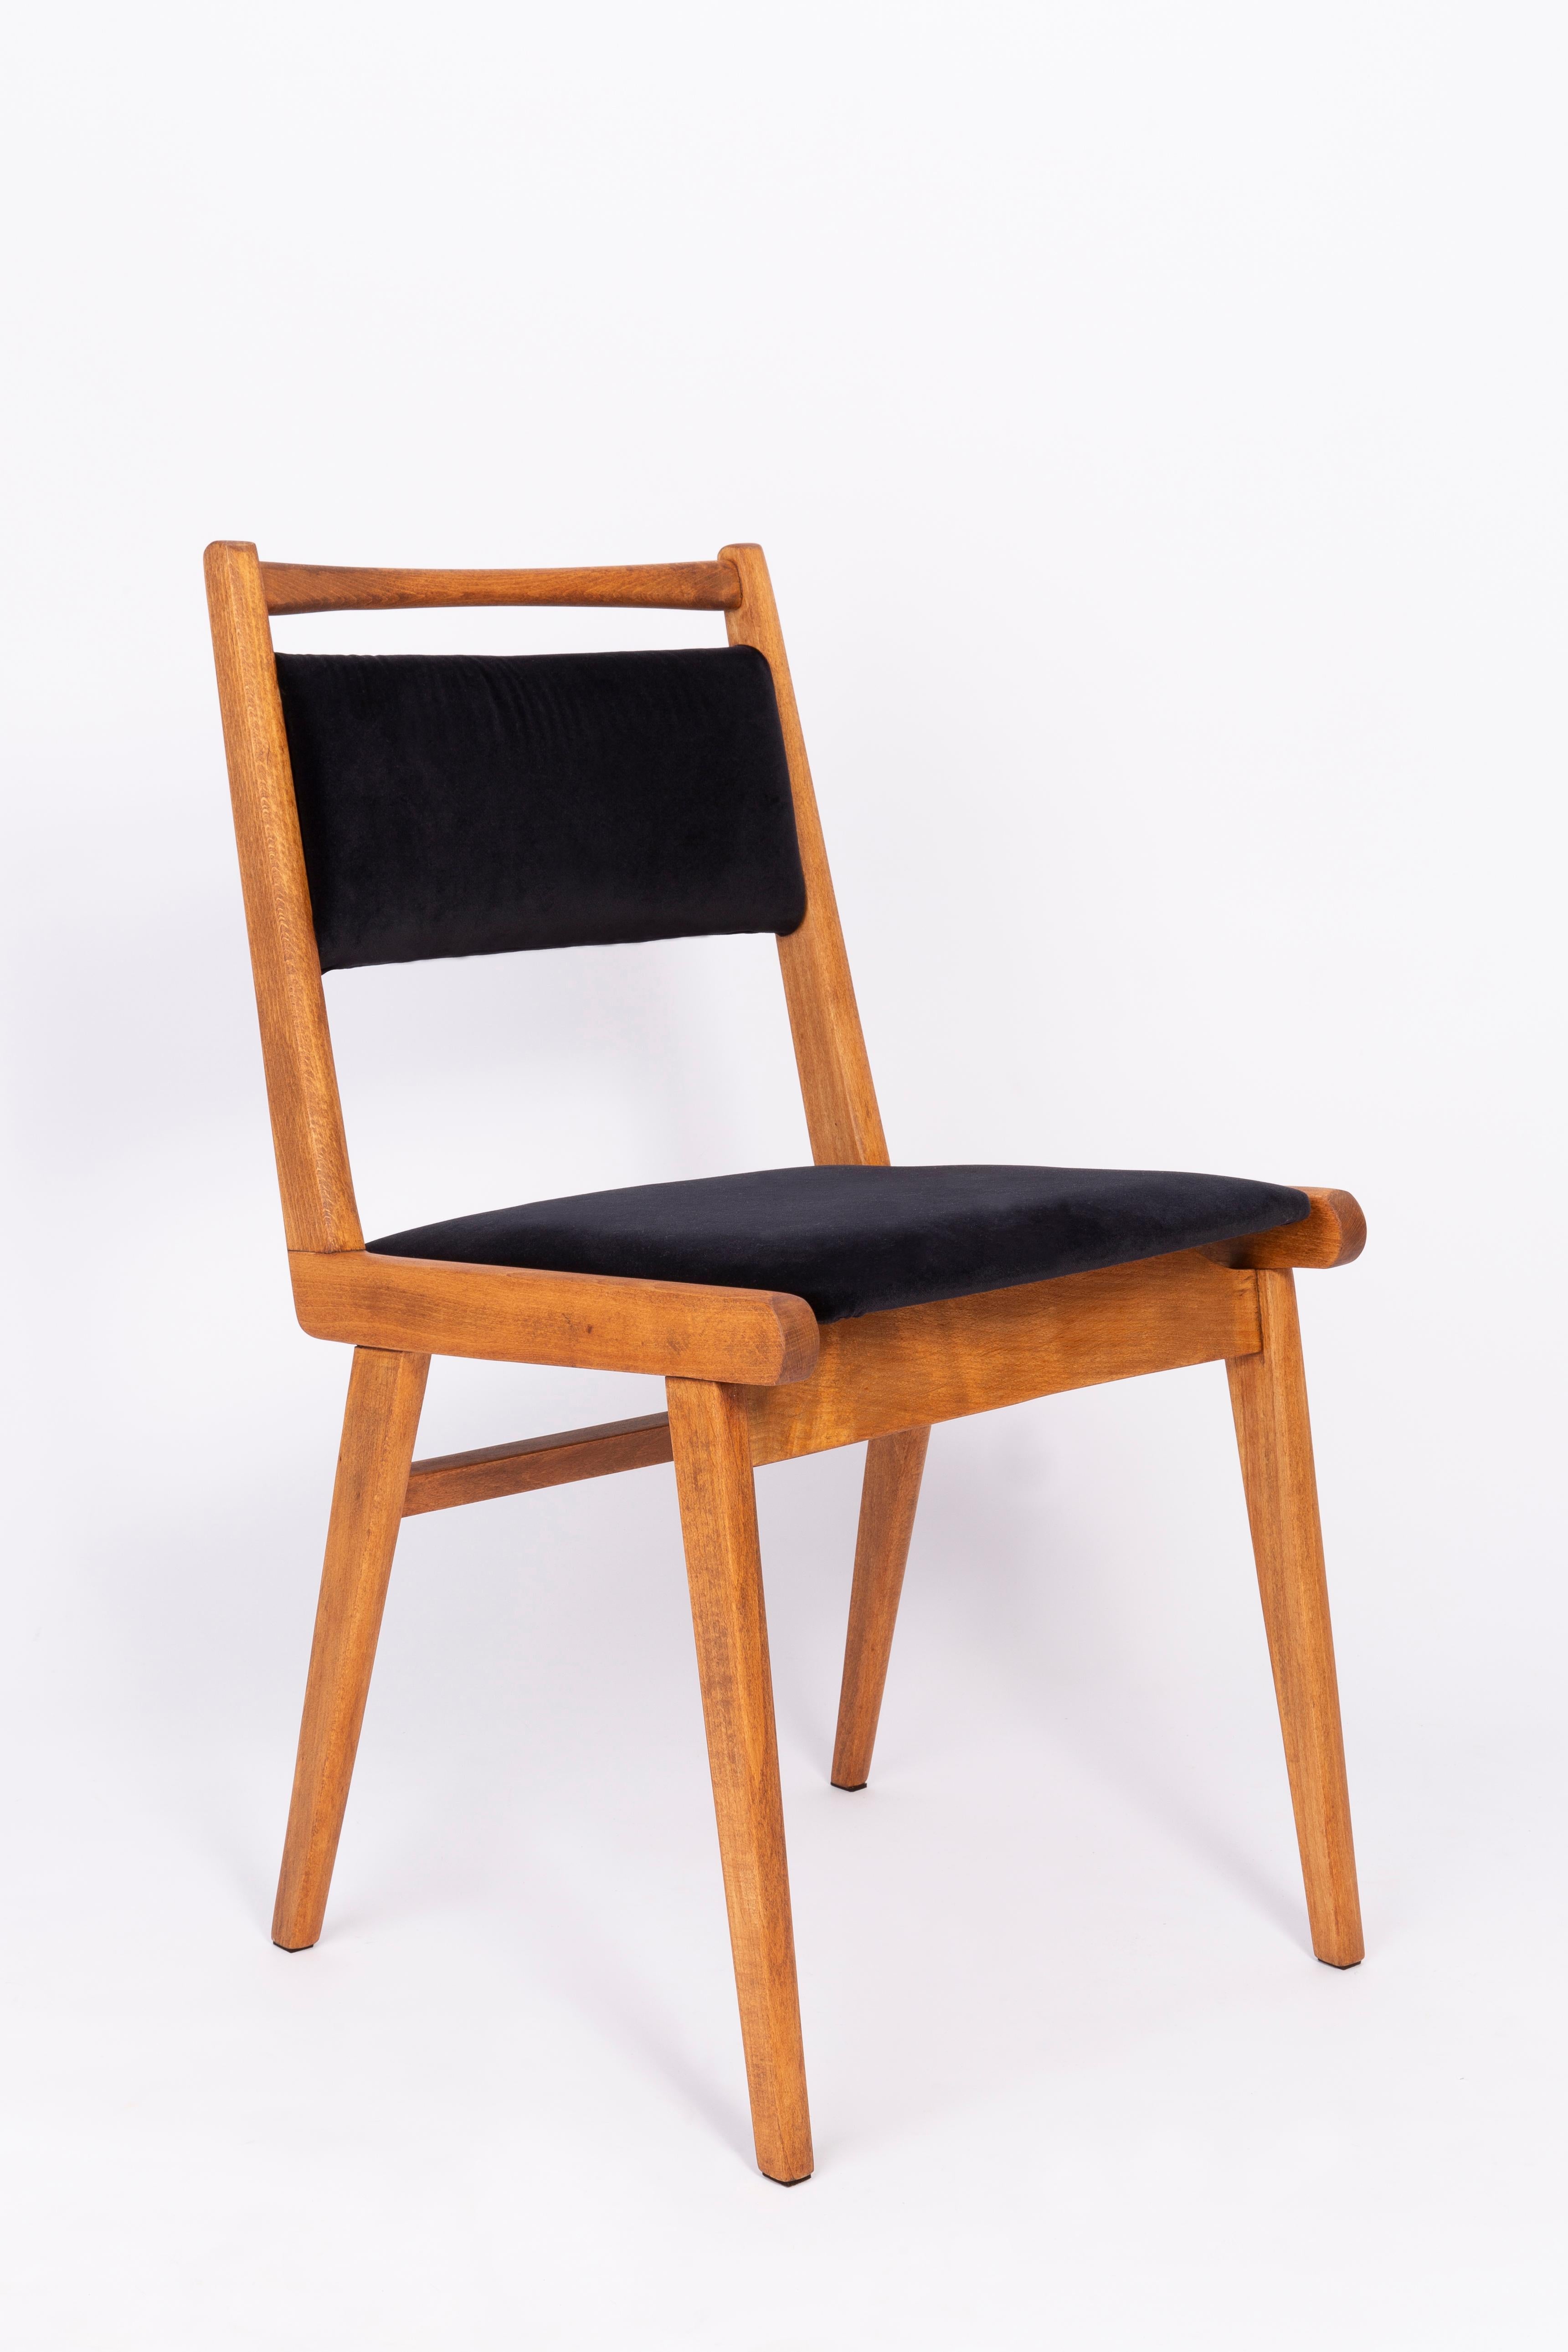 Stuhl entworfen von Prof. Rajmund Halas. Es handelt sich um ein Modell vom Typ JAR. Hergestellt aus Buchenholz. Der Stuhl wurde komplett neu gepolstert, die Holzarbeiten wurden aufgefrischt. Sitz und Rückenlehne sind mit schwarzem, strapazierfähigem